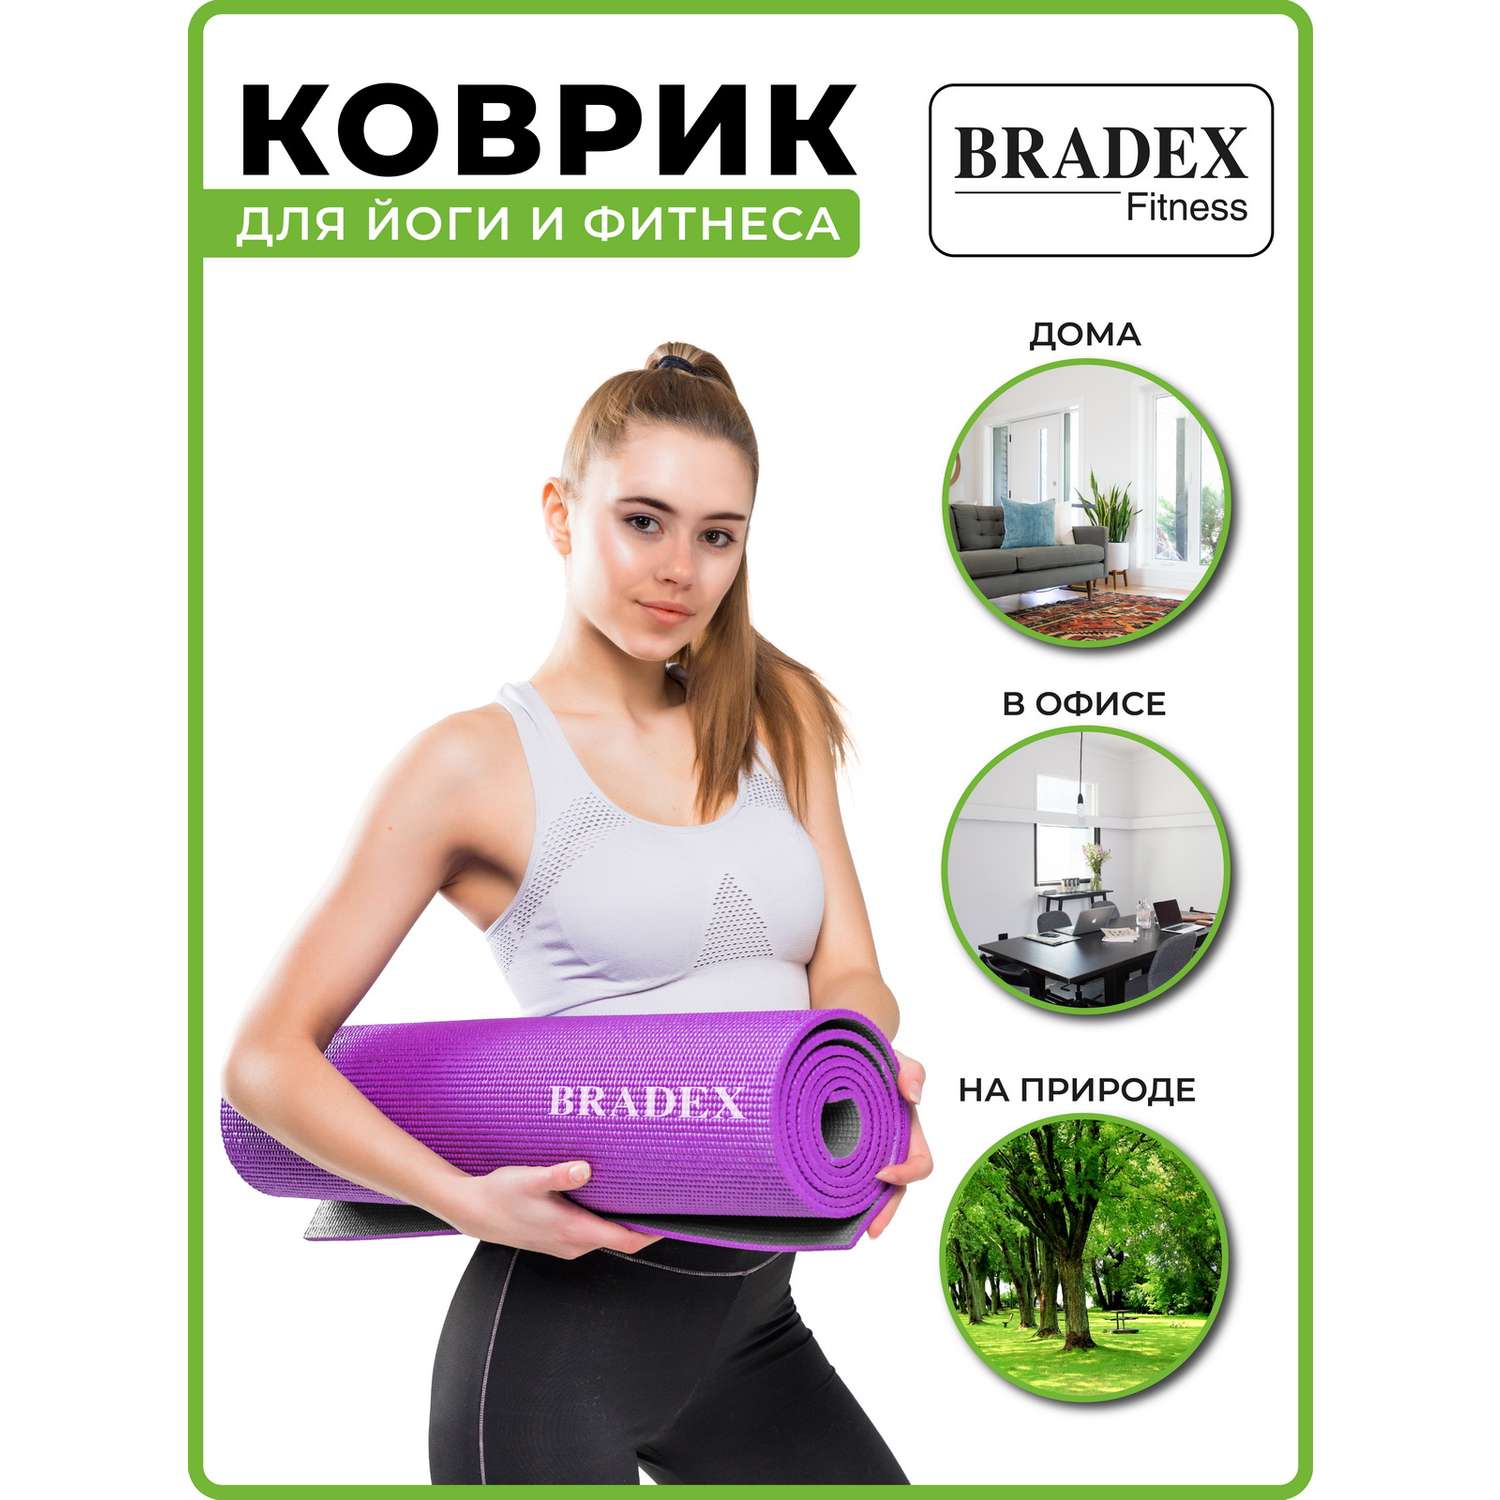 Коврик для йоги и фитнеса Bradex двухслойный фиолетовый 183х61 см - фото 6